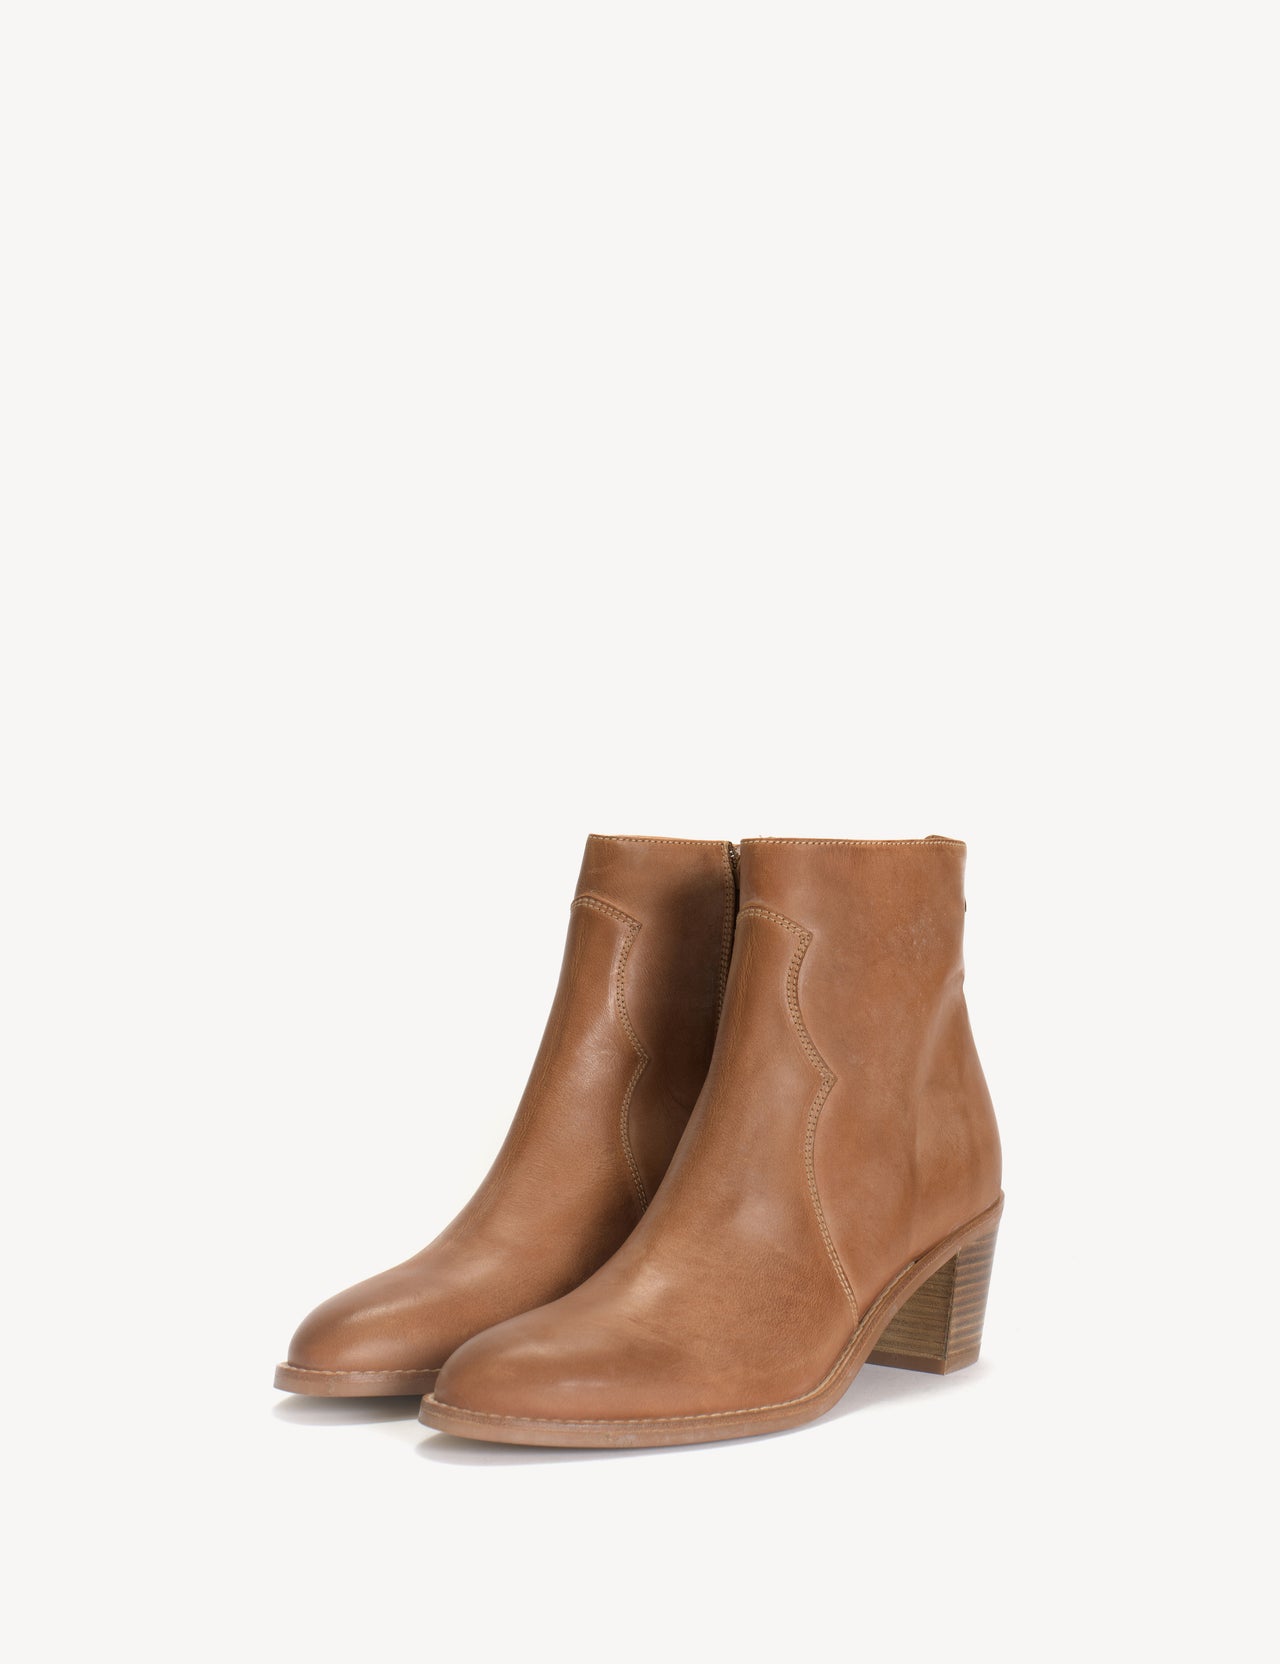 Vanessa Boot In Cognac Calfskin Leather